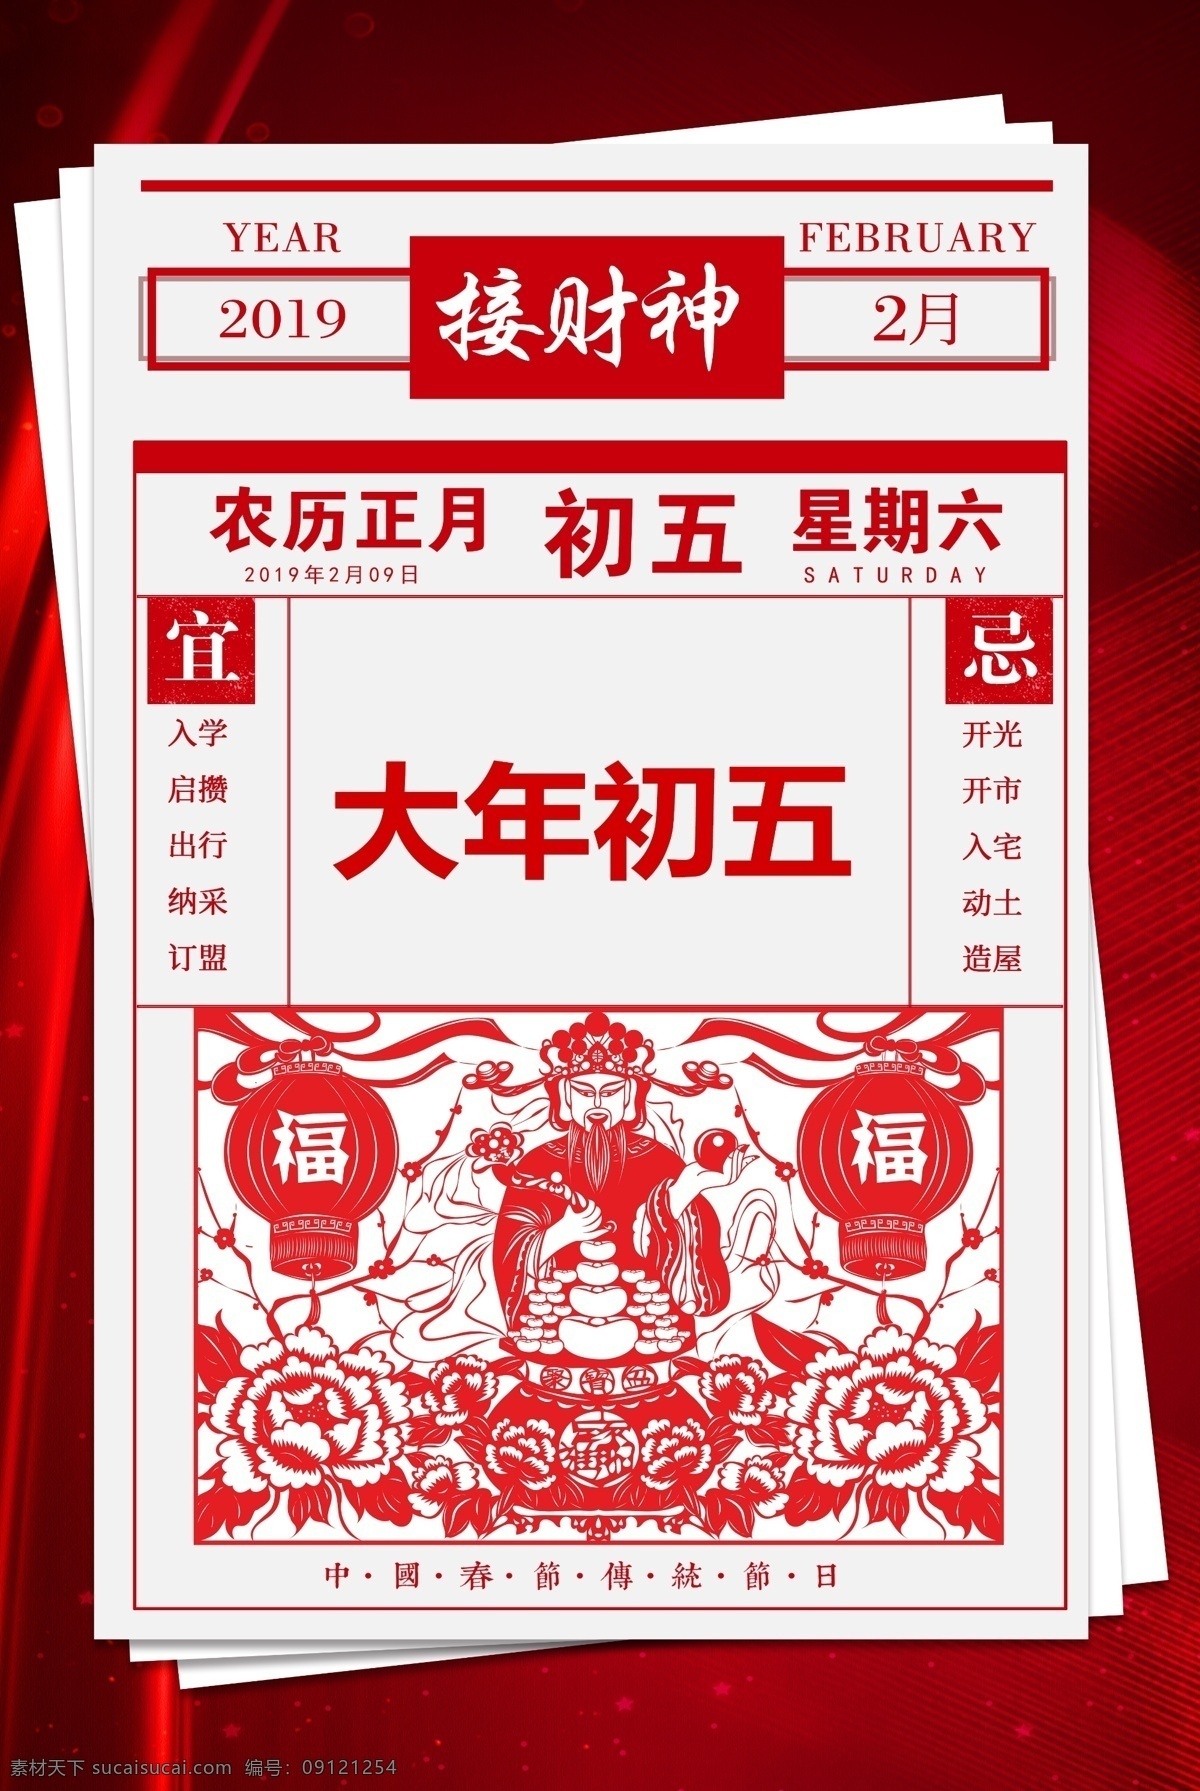 春节 新年 传统 宣传海报 宣传 海报 传统节日